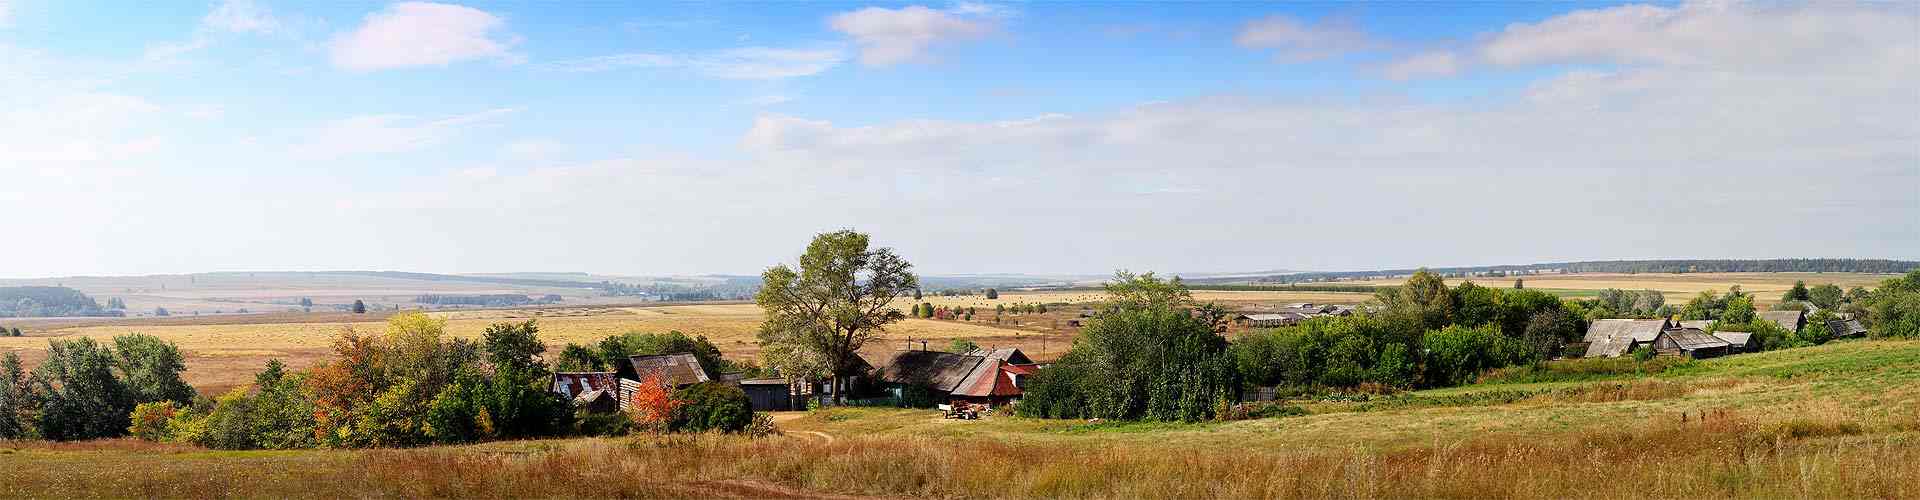 Casas rurales en Navarra